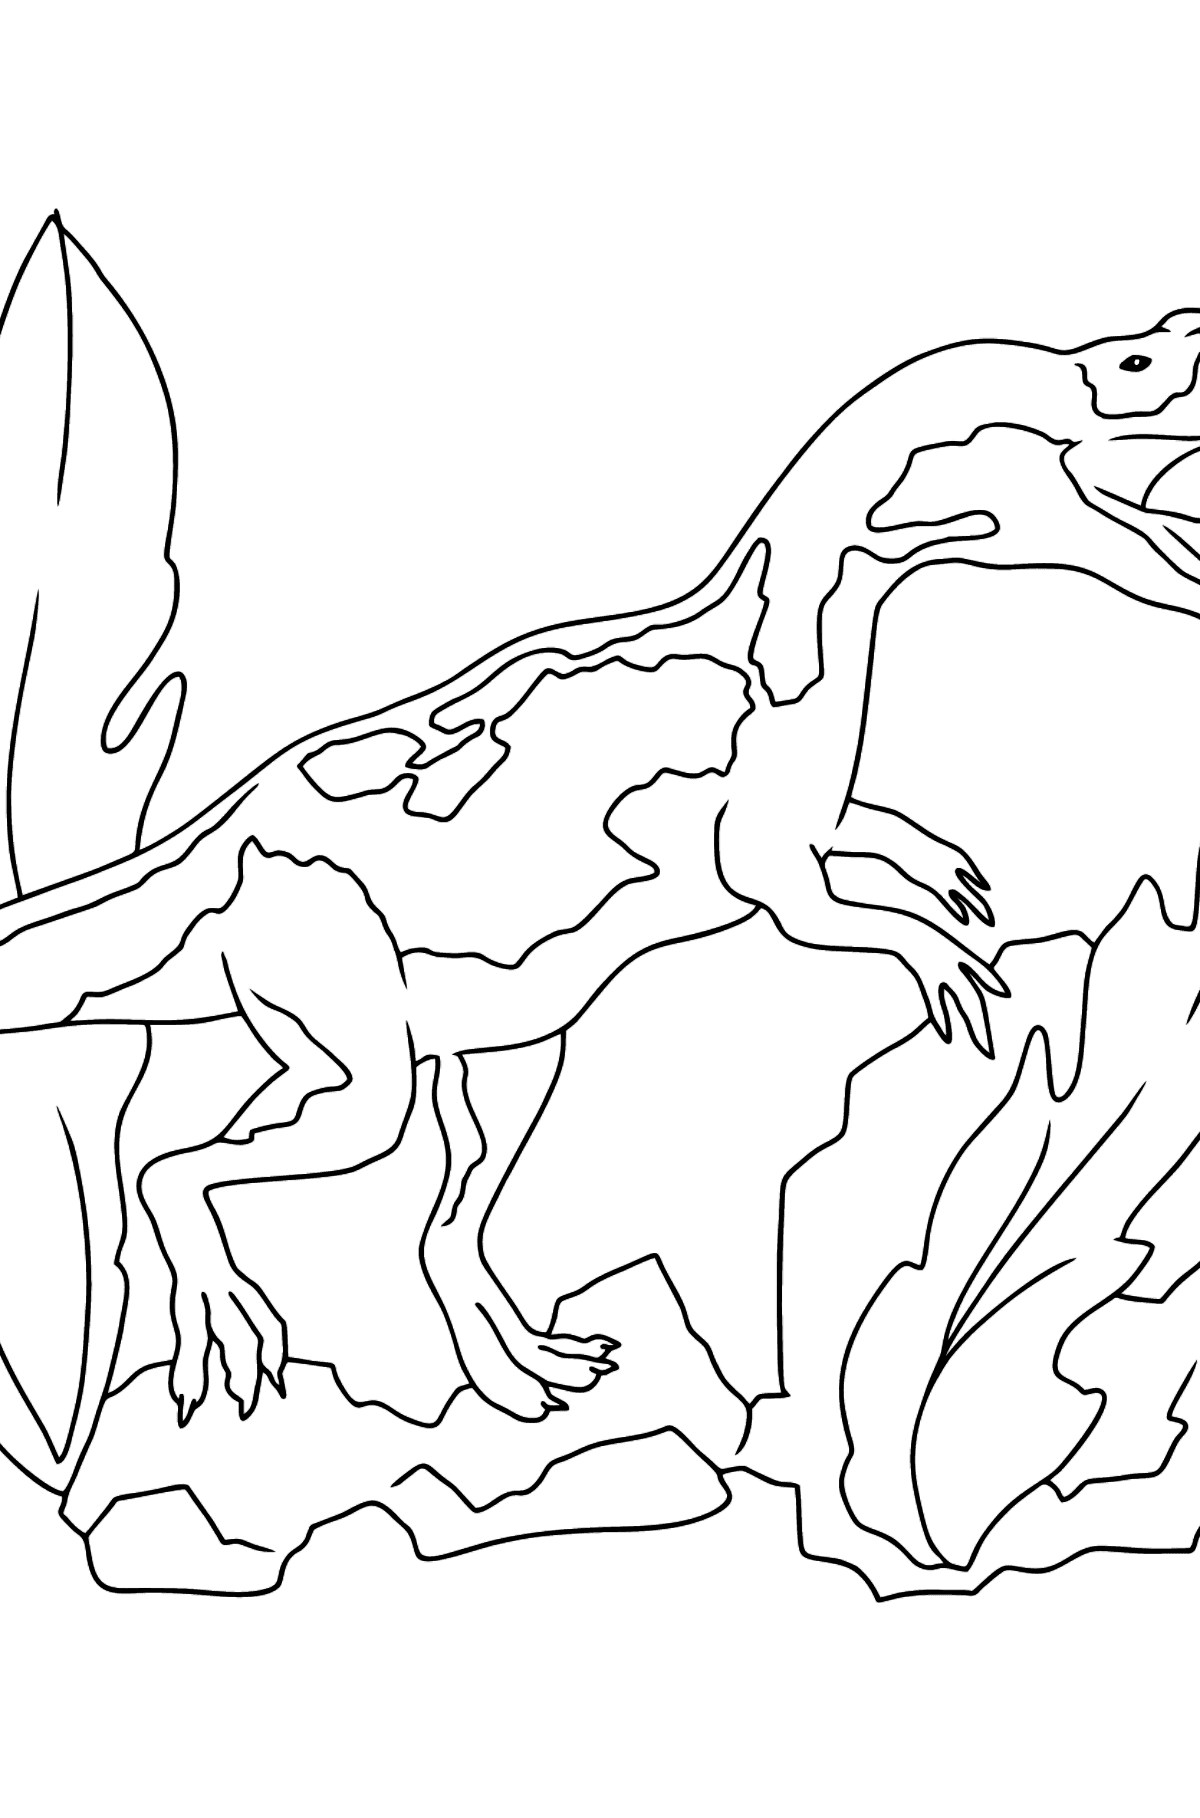 Tegning til fargelegging Jurassic Dinosaur (enkelt) - Tegninger til fargelegging for barn